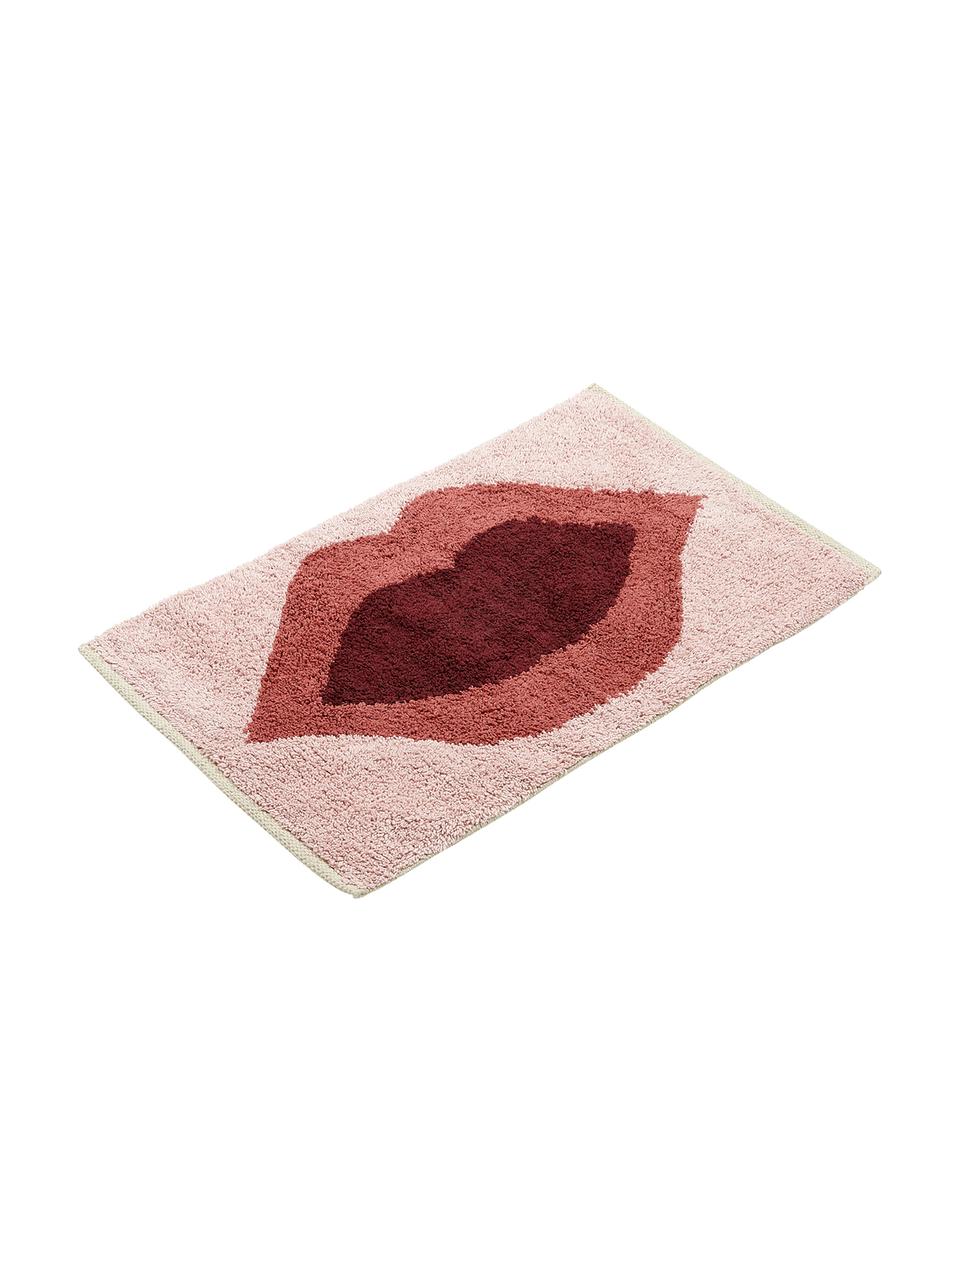 Tappeto bagno con motivo Kiss, Cotone
Non antiscivolo, Rosa, rosso, rosso scuro, Larg. 60 x Lung. 90 cm